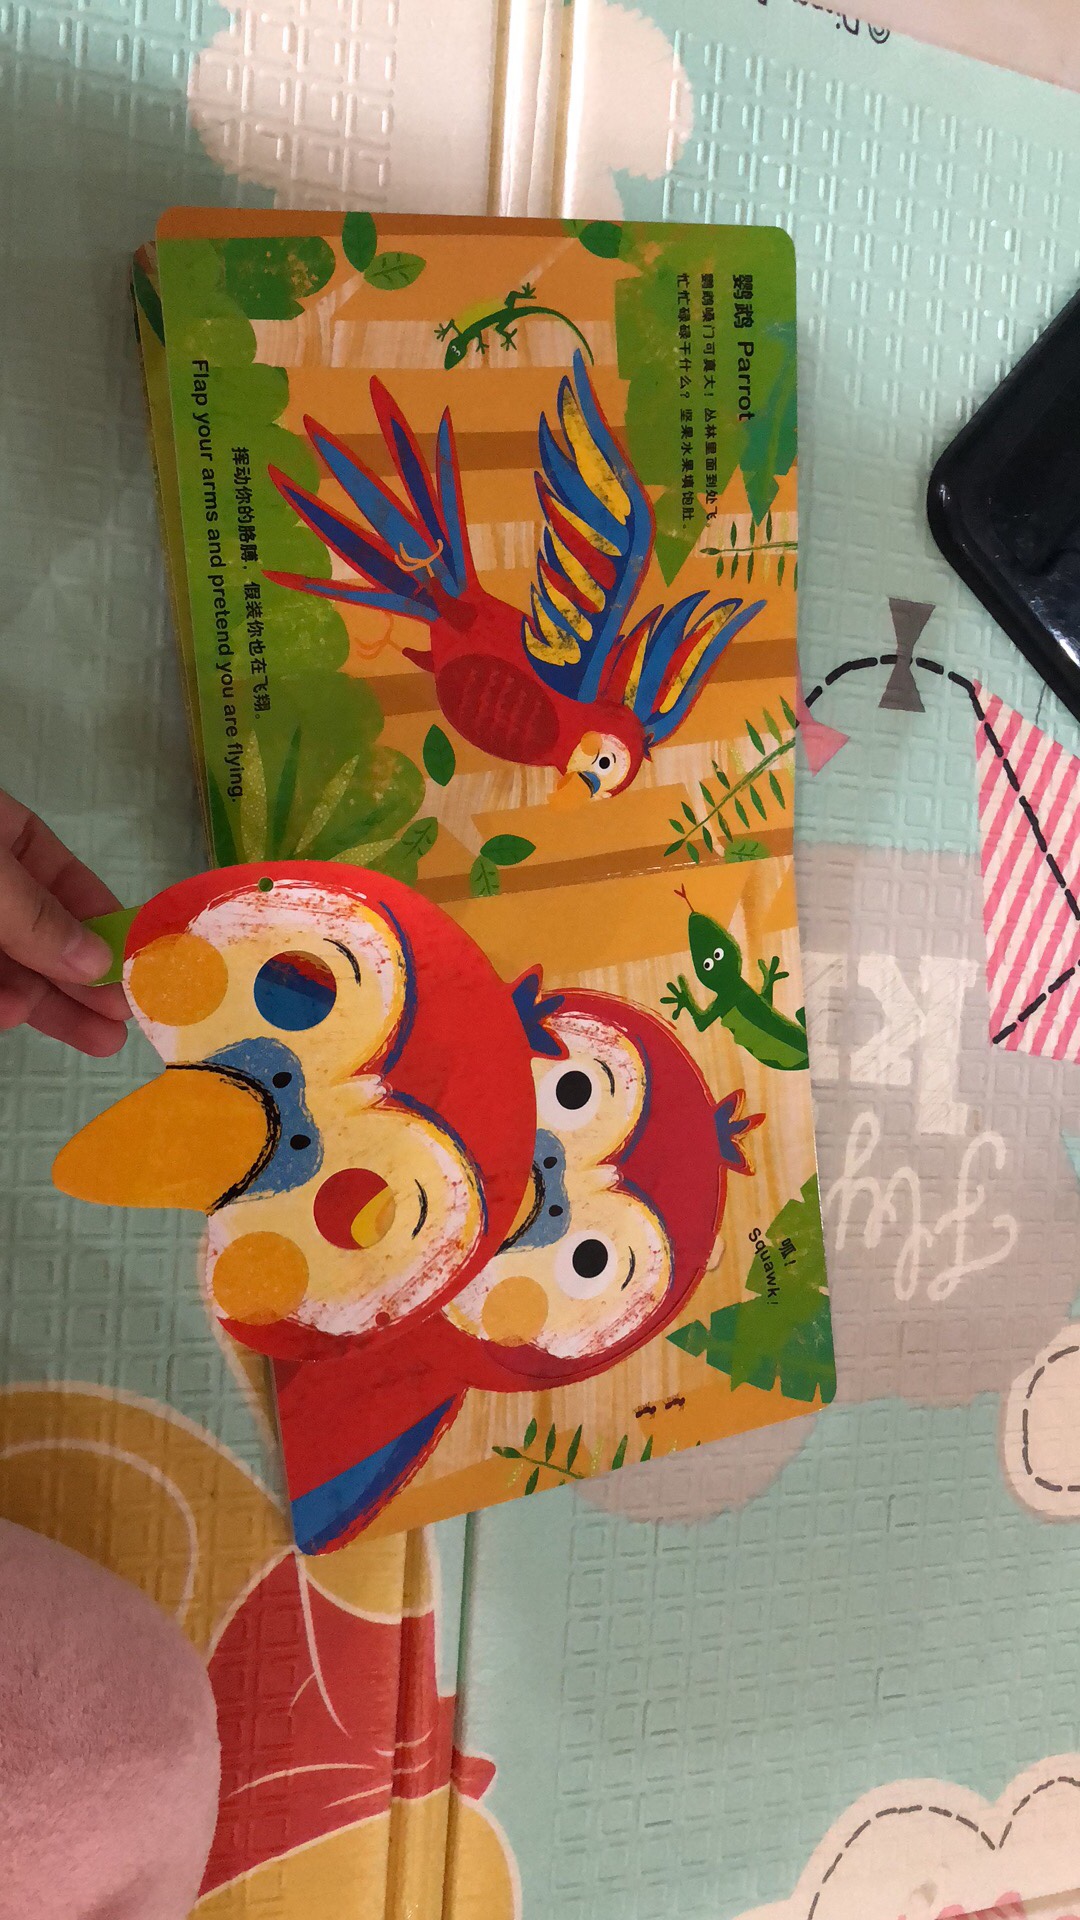 不错，领了2-1的券买的，这本书色彩鲜艳，画风可爱，里面还有面具可以拿出来和孩子互动。